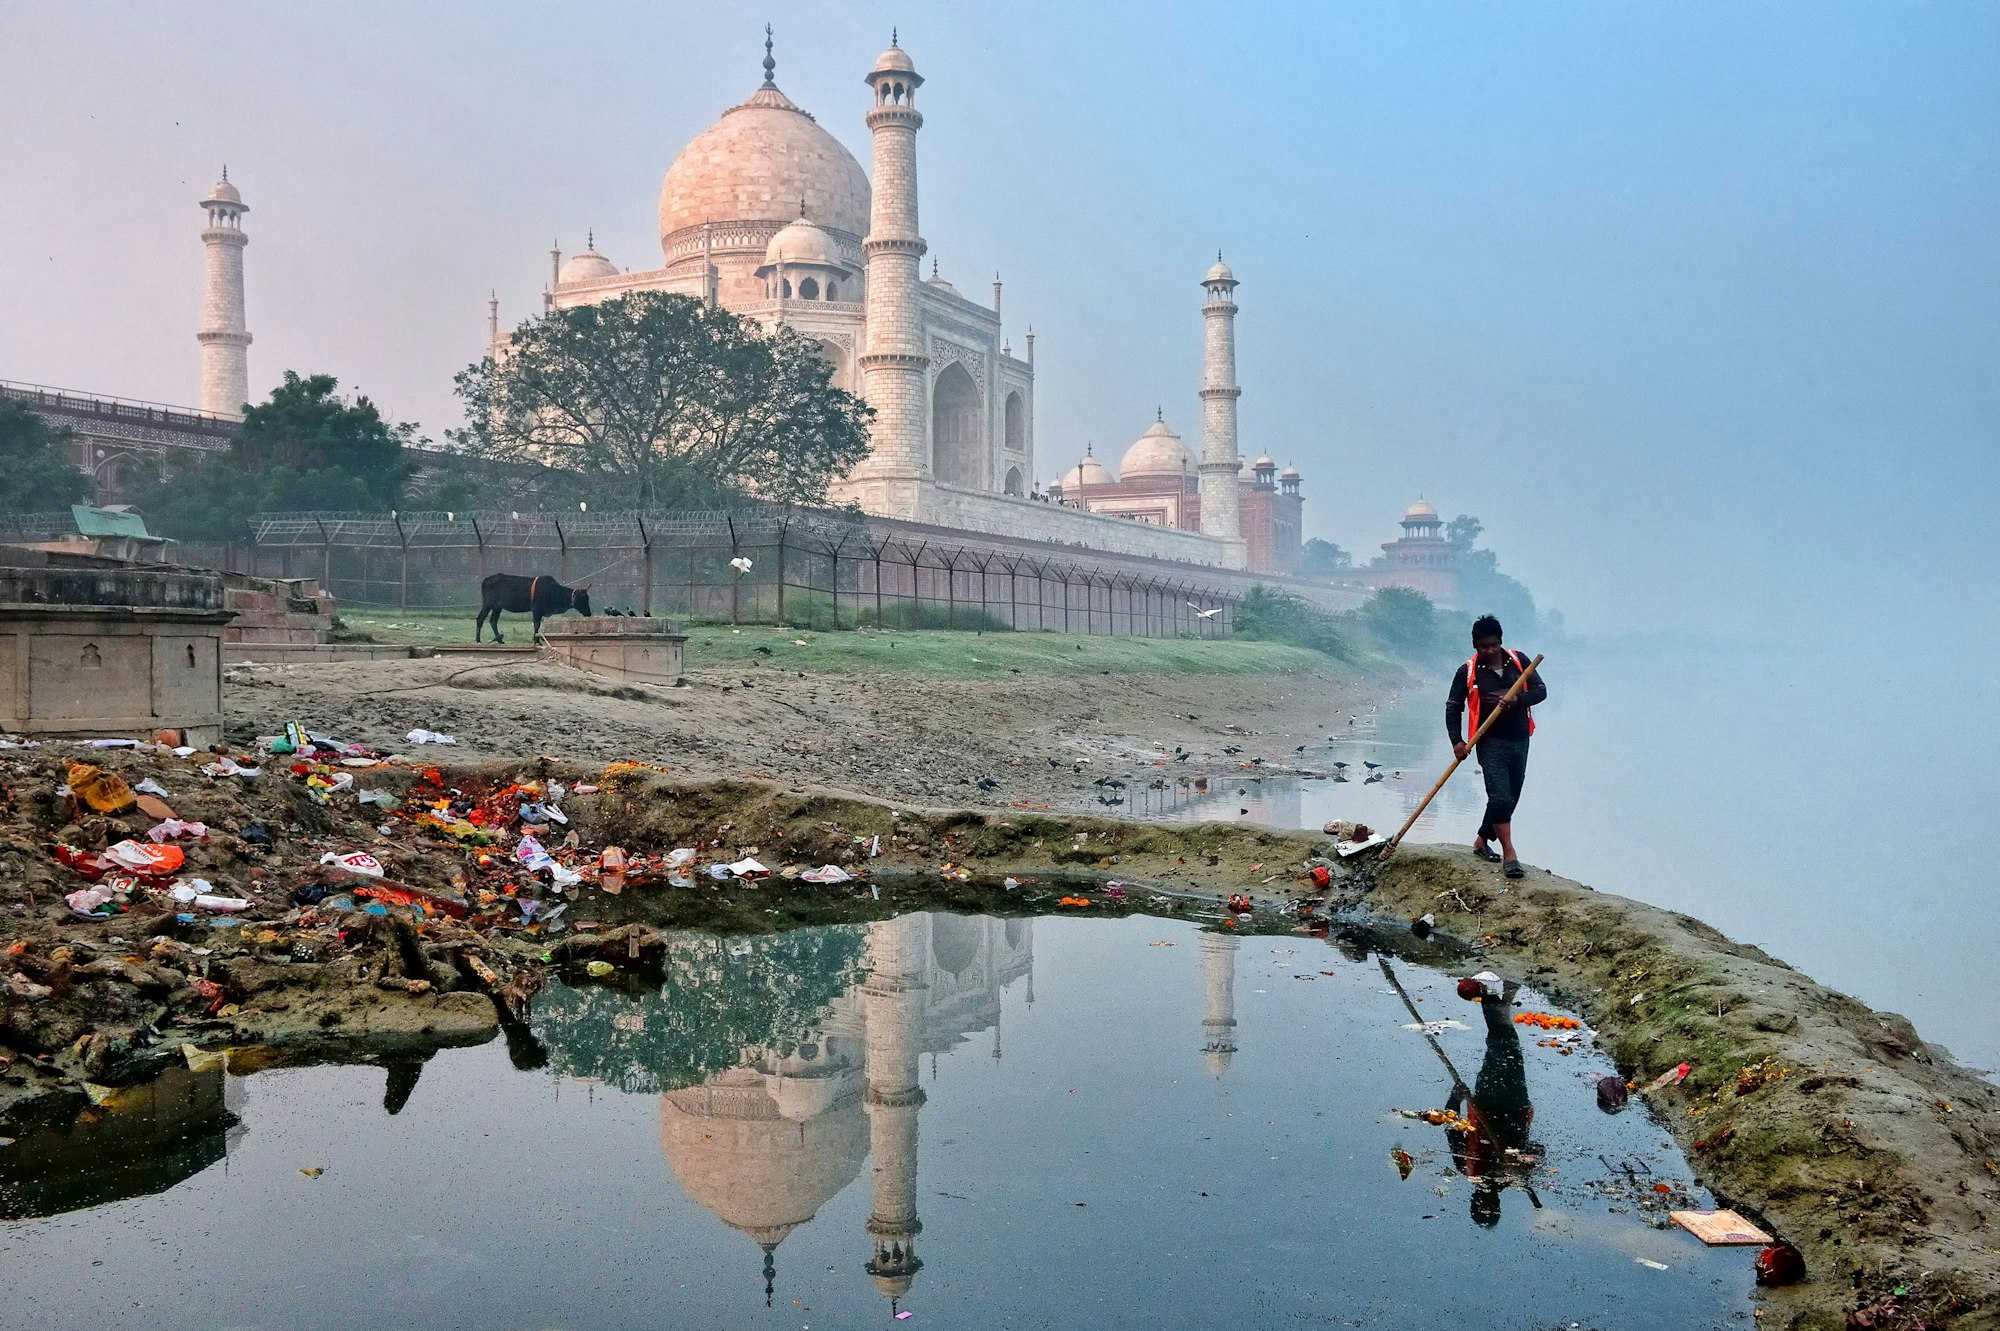 Ein Arbeiter säubert in aller Stille die Umgebung hinter dem Taj Mahal, wo sich einige der örtlichen Abfalldeponien befinden. Diese Szene steht im krassen Gegensatz zu den Ressourcen, die für die Erhaltung und Renovierung des Taj Mahal eingesetzt werden.